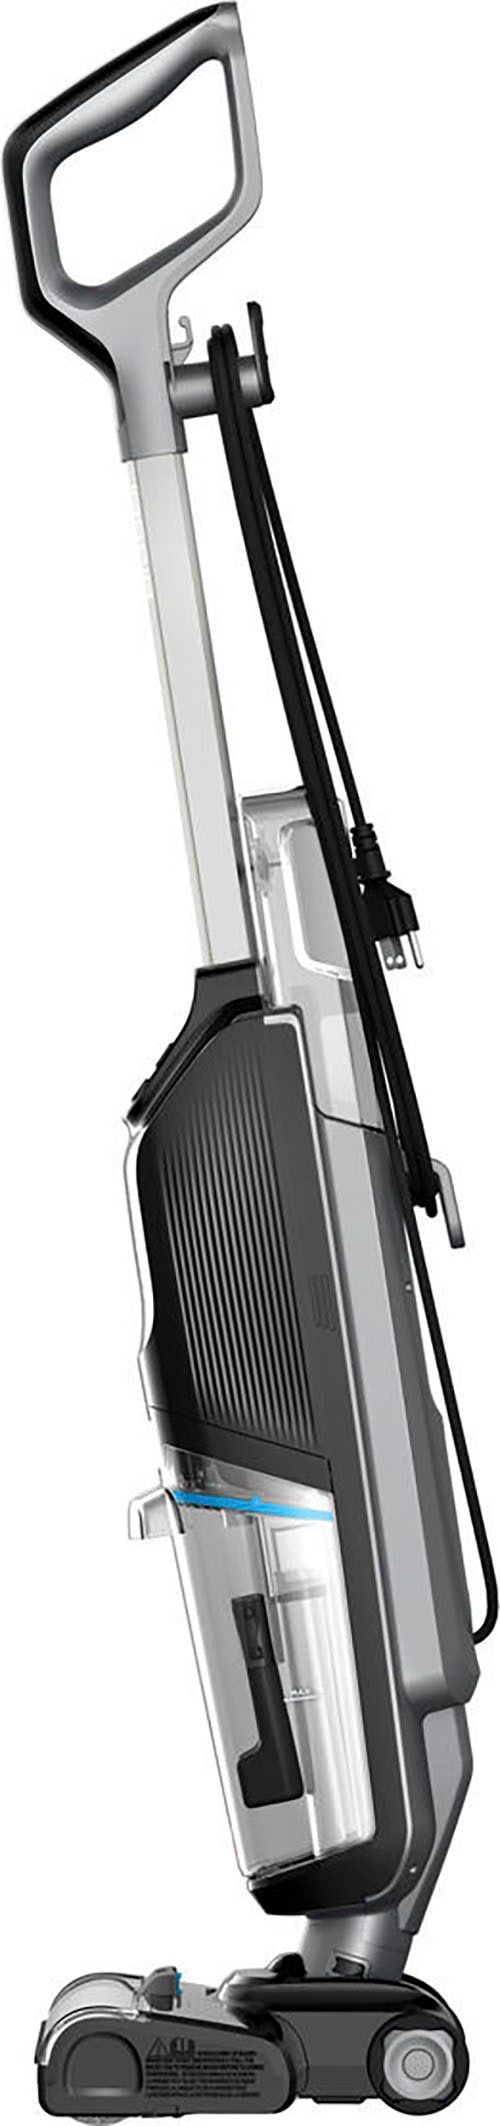 Bissell Nass-Trocken-Sauger »CrossWave® HF2 Select Nass-Trocken-Sauger, leicht, einfach steuerbar«, für Hartböden, Dual-Tank, saugt & wischt gleichzeitig, Selbstreinigung